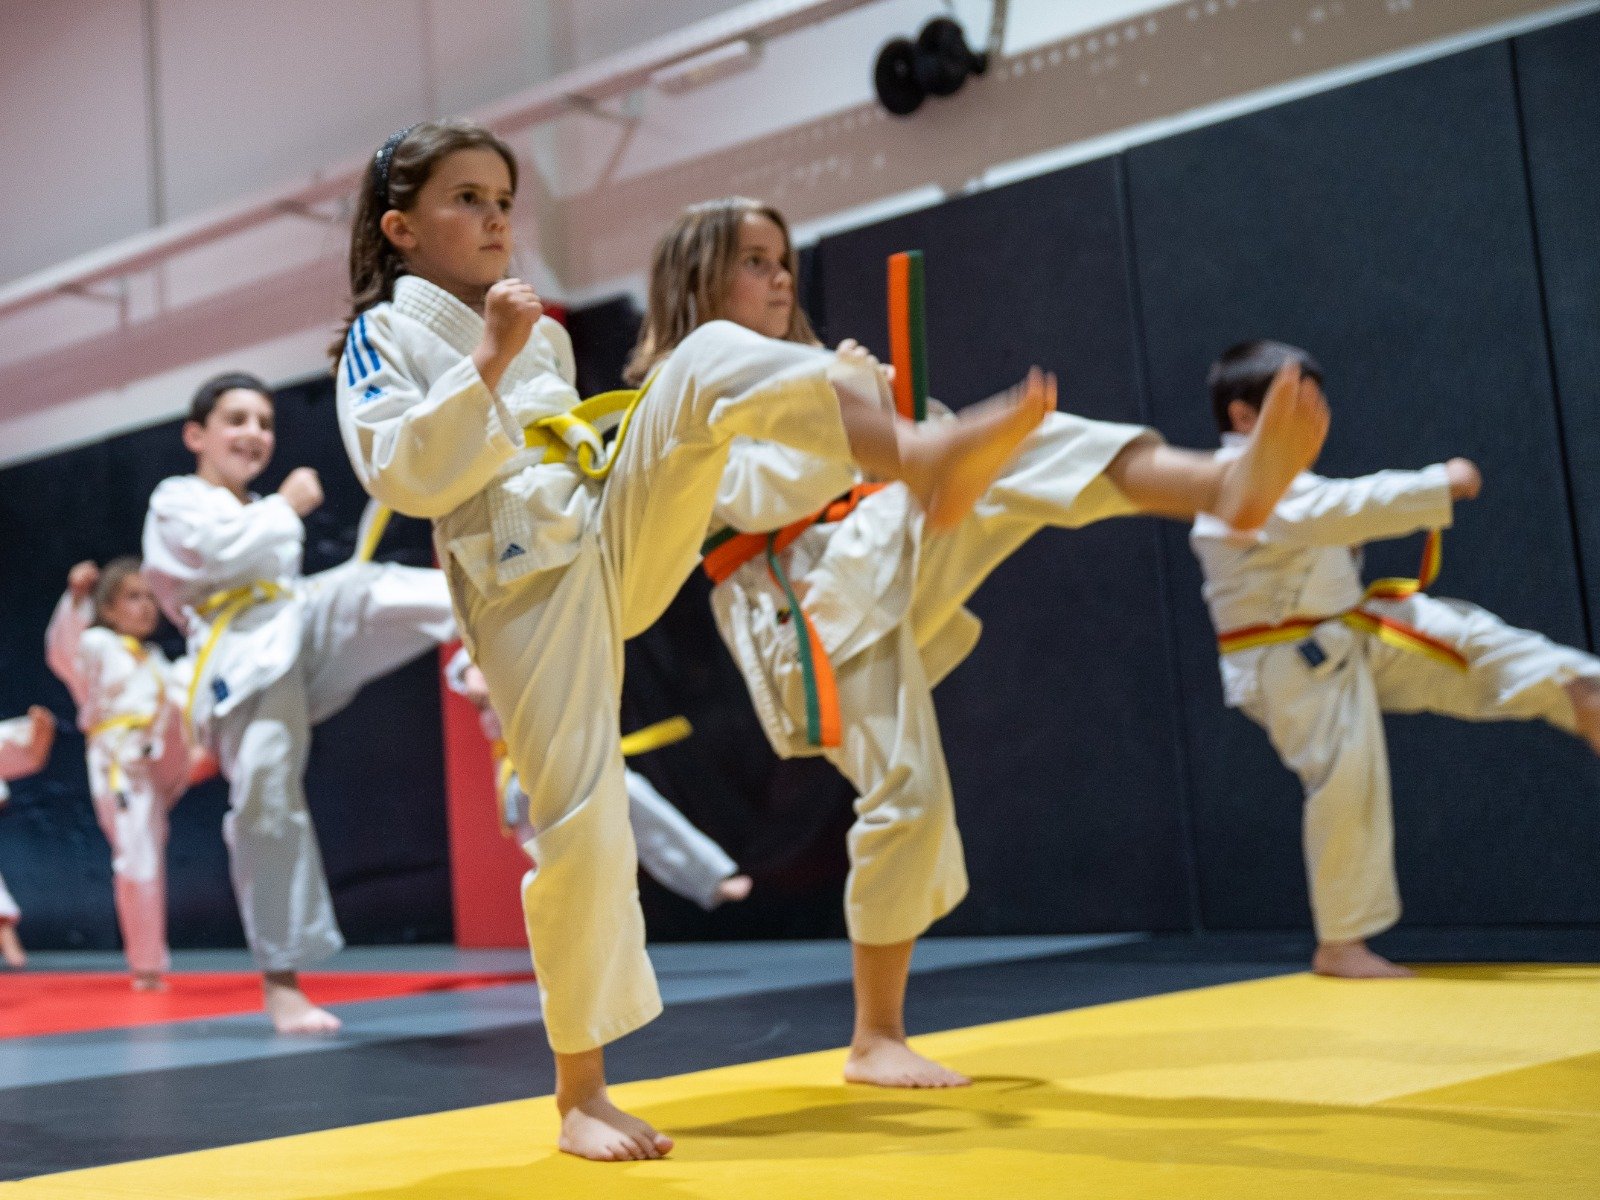 Clases de karate para niños.